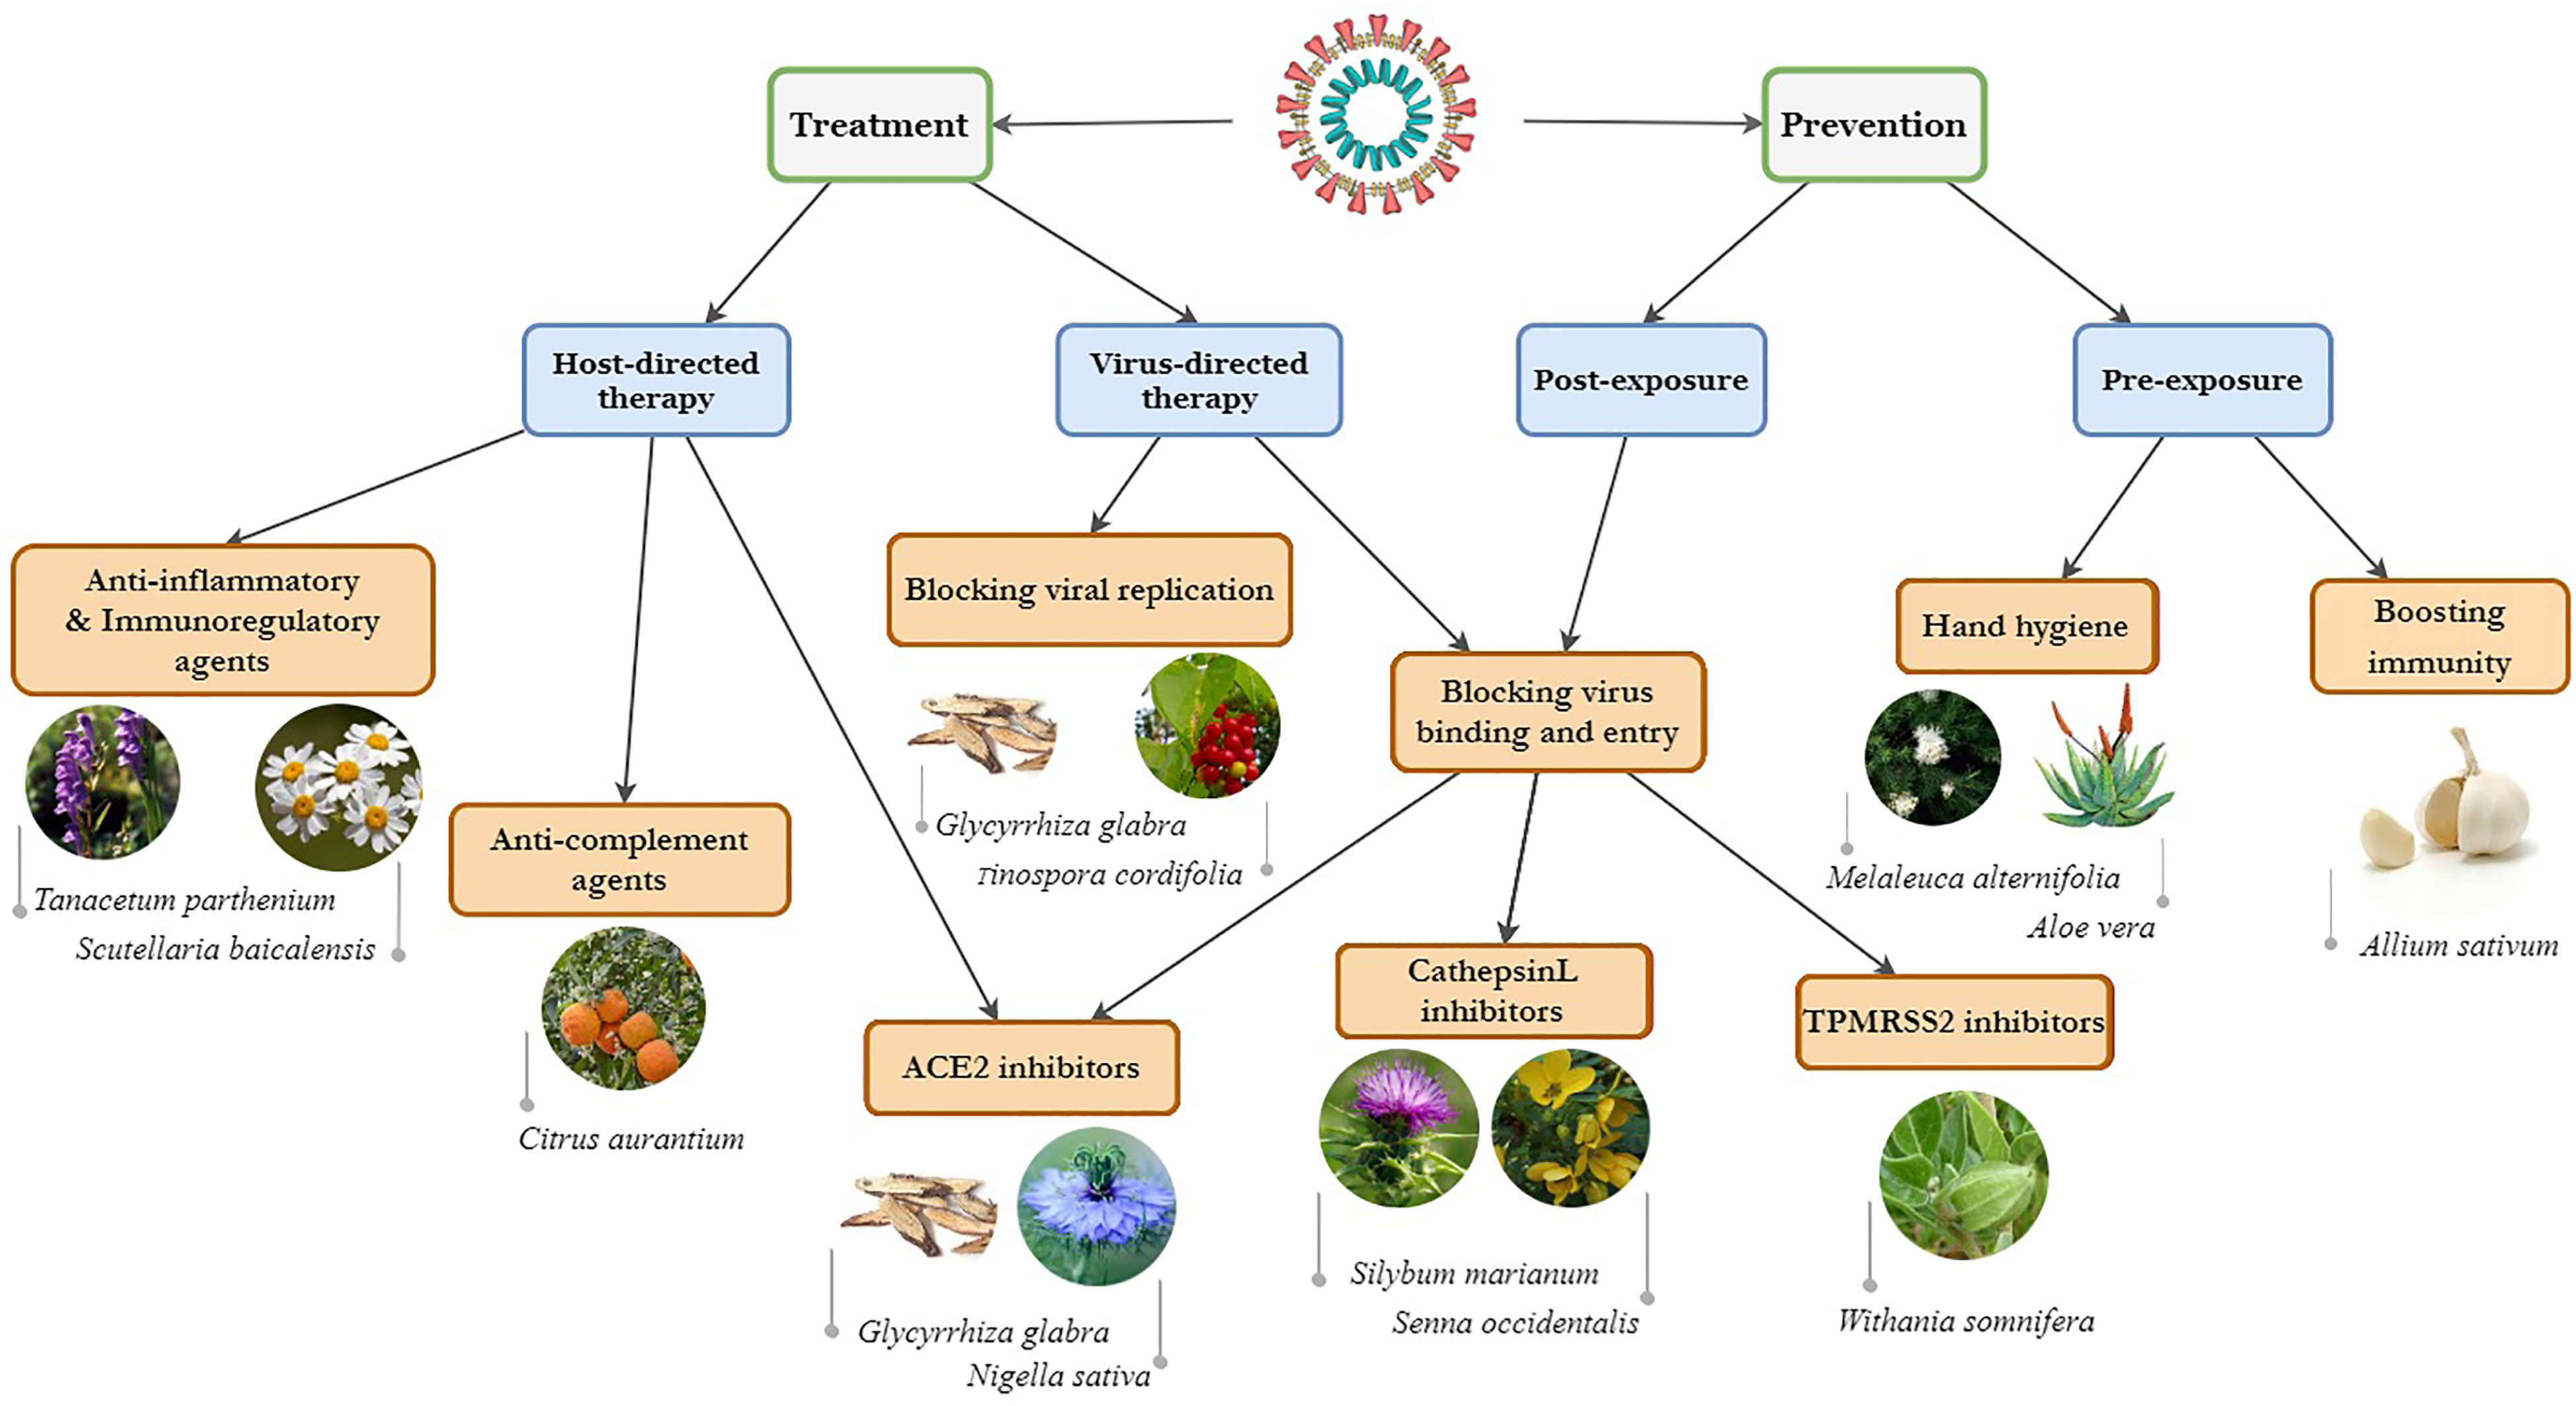 کووید ۱۹: استراتژی های کلی برای درمانهای گیاهی